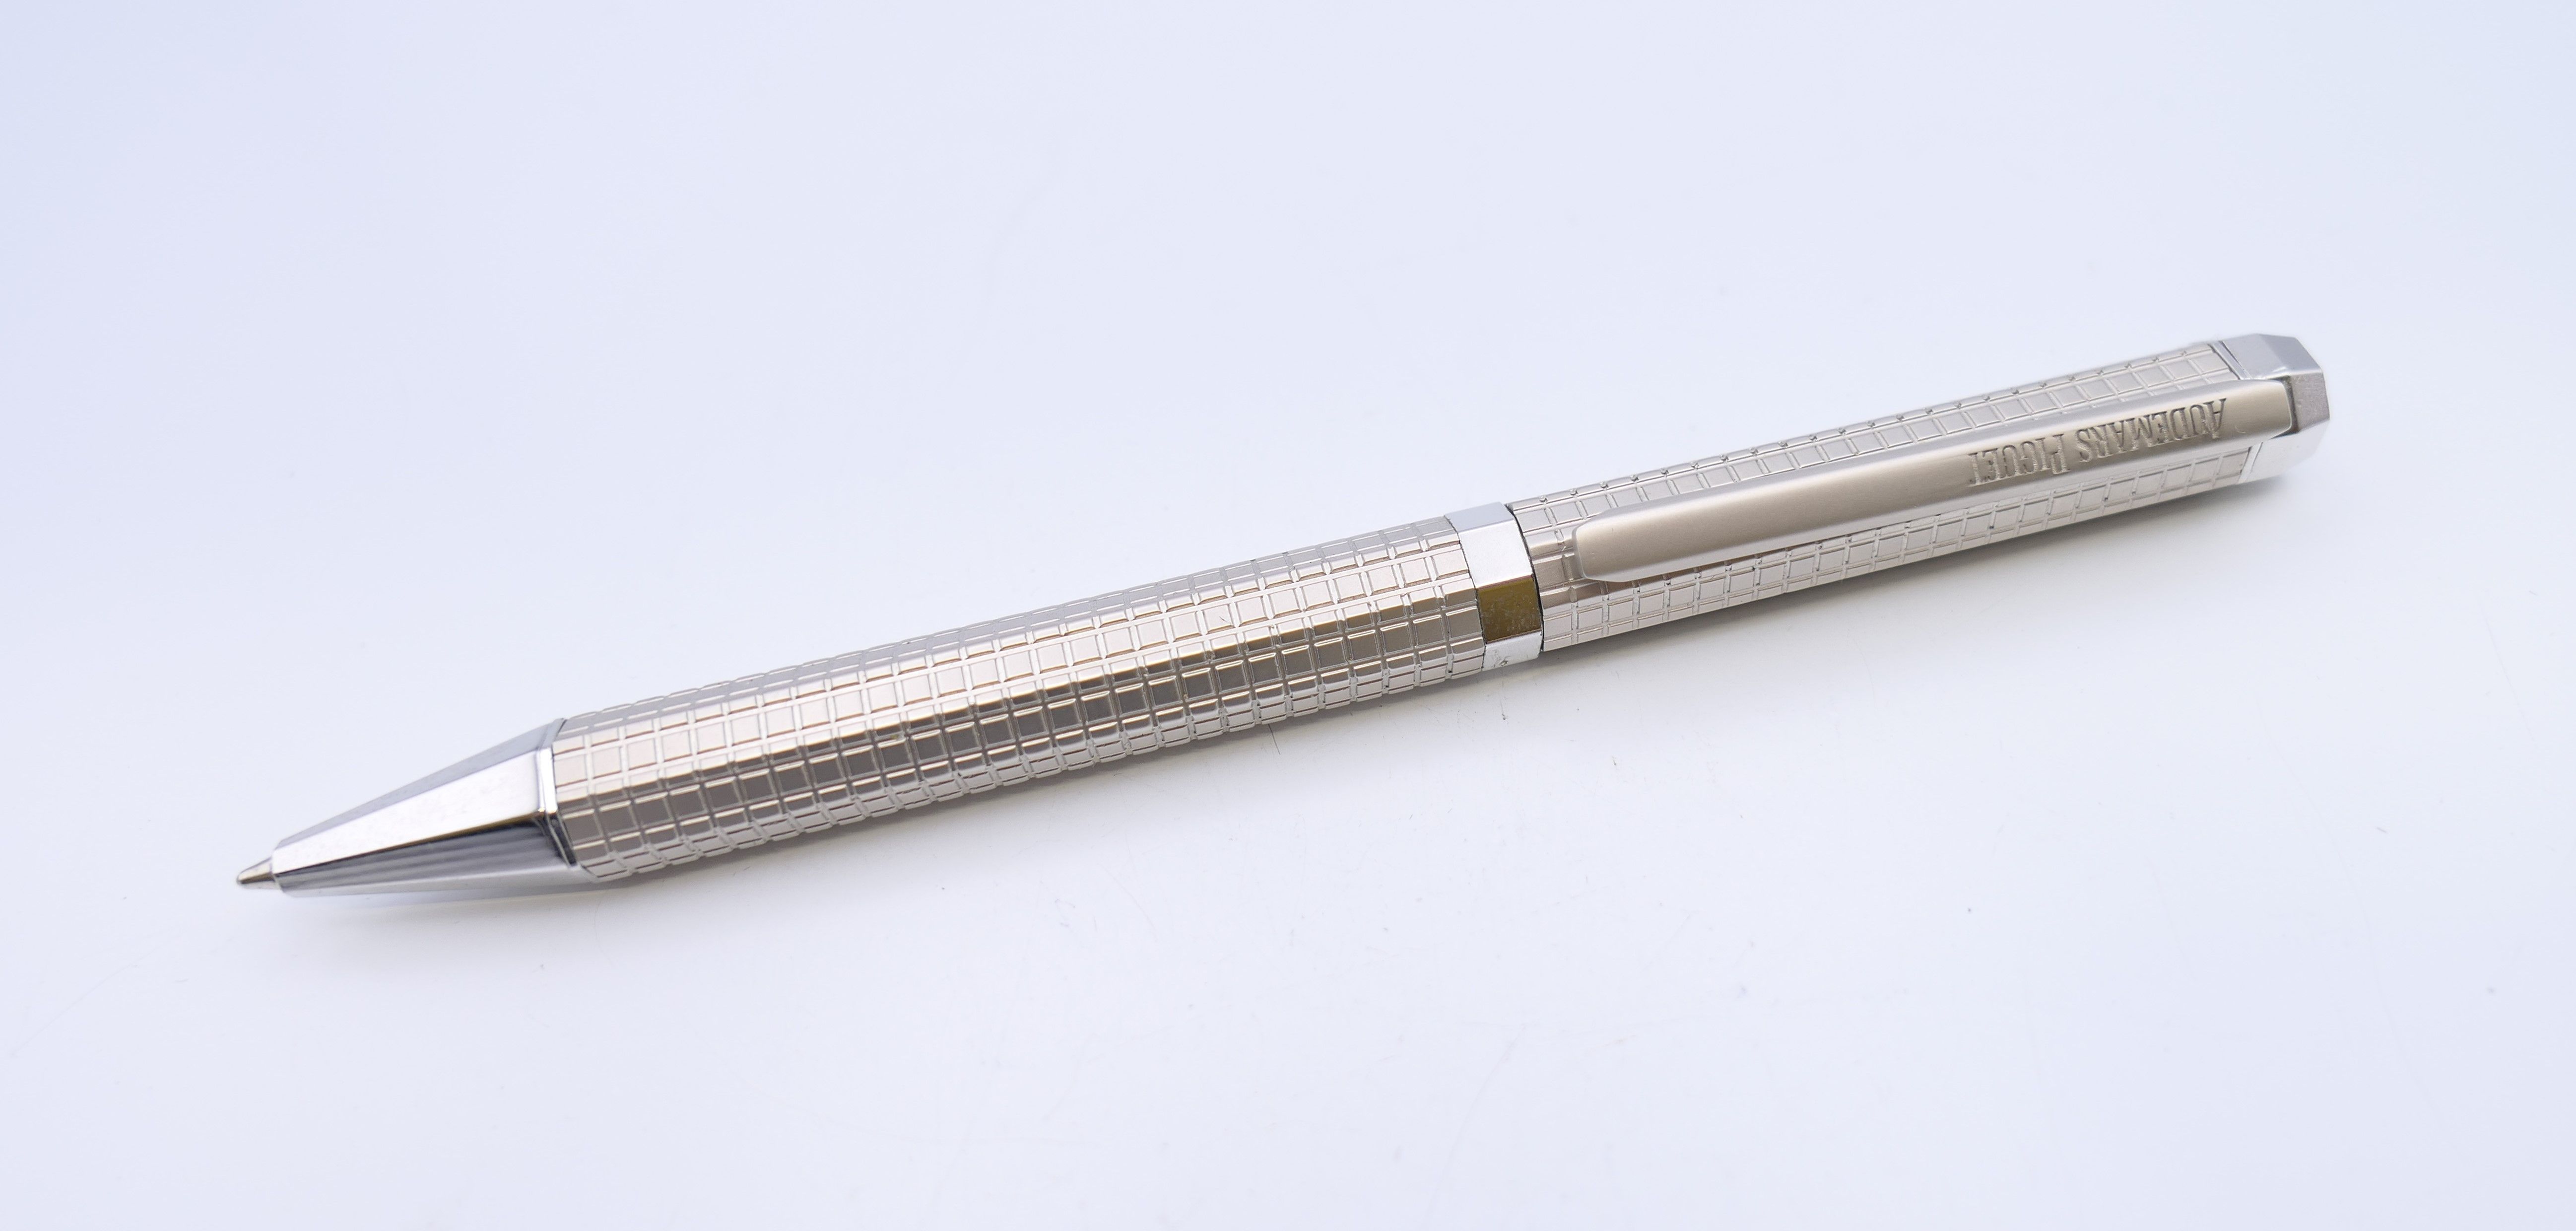 A Audemars Piquet biro pen in original box.